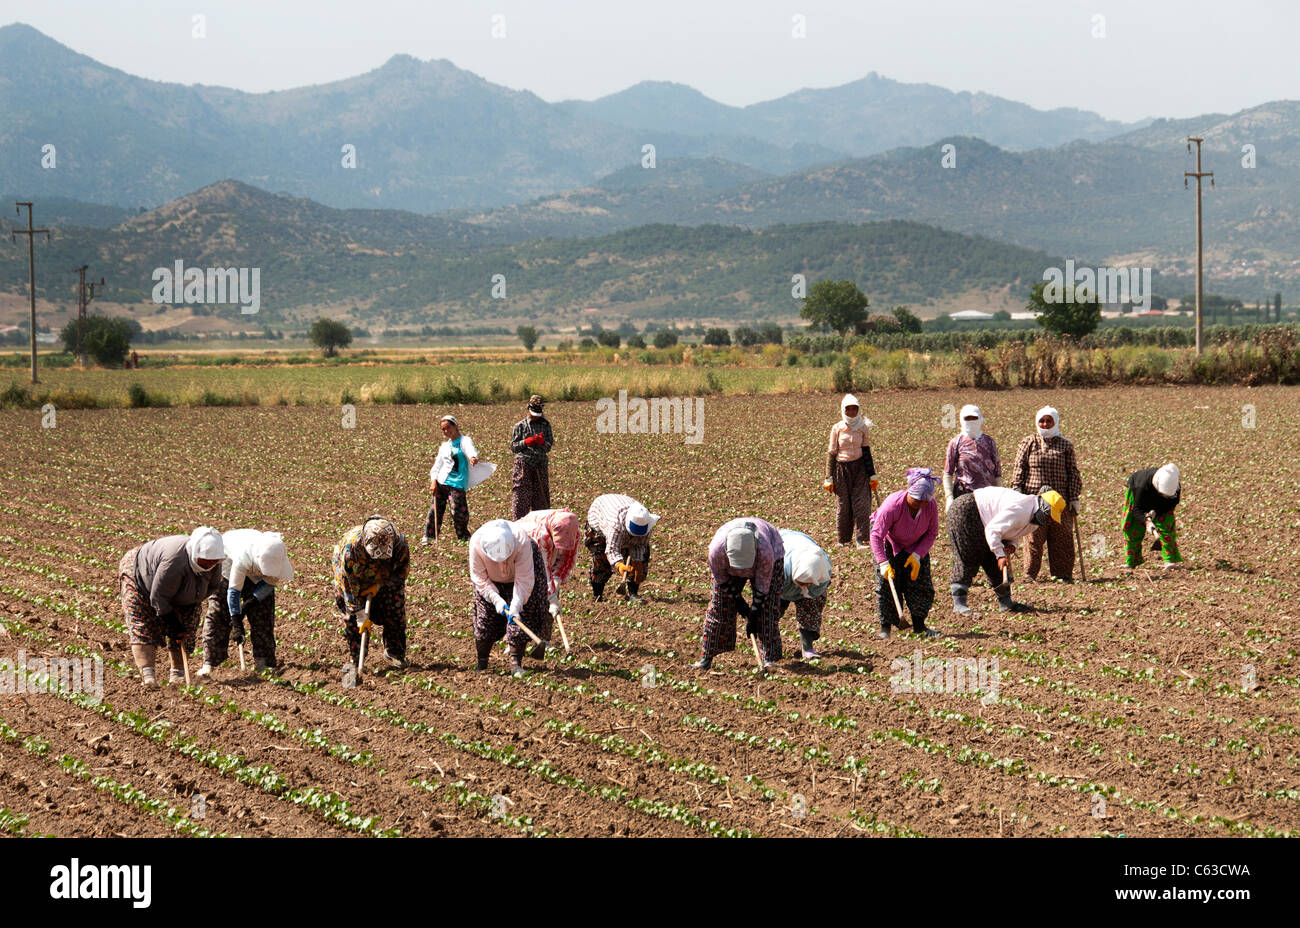 Mujer Mujeres al sur oeste de Turquía agricultor cosecha turca de granja Foto de stock